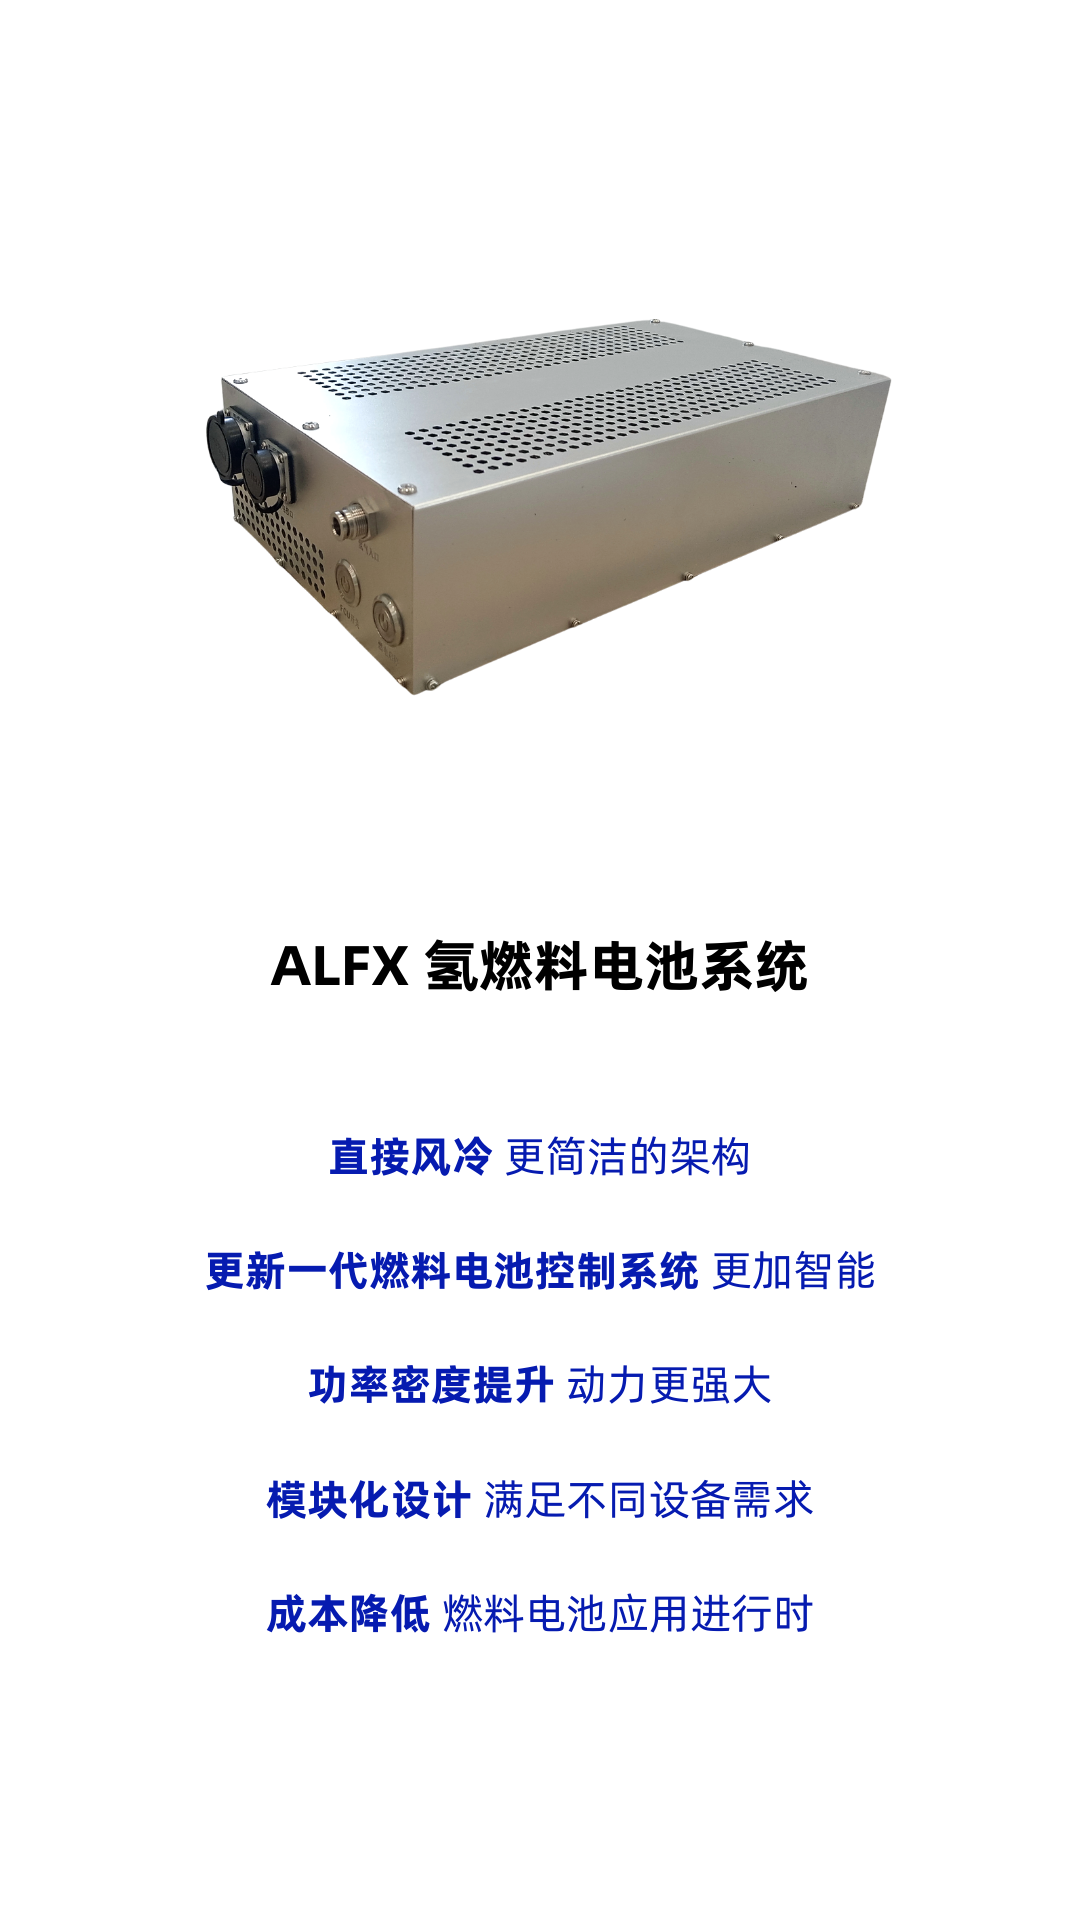 ​暗流科技发布 ALFX风冷式氢燃料电池系统，面向小功率场景提供氢燃料电池应用方案!